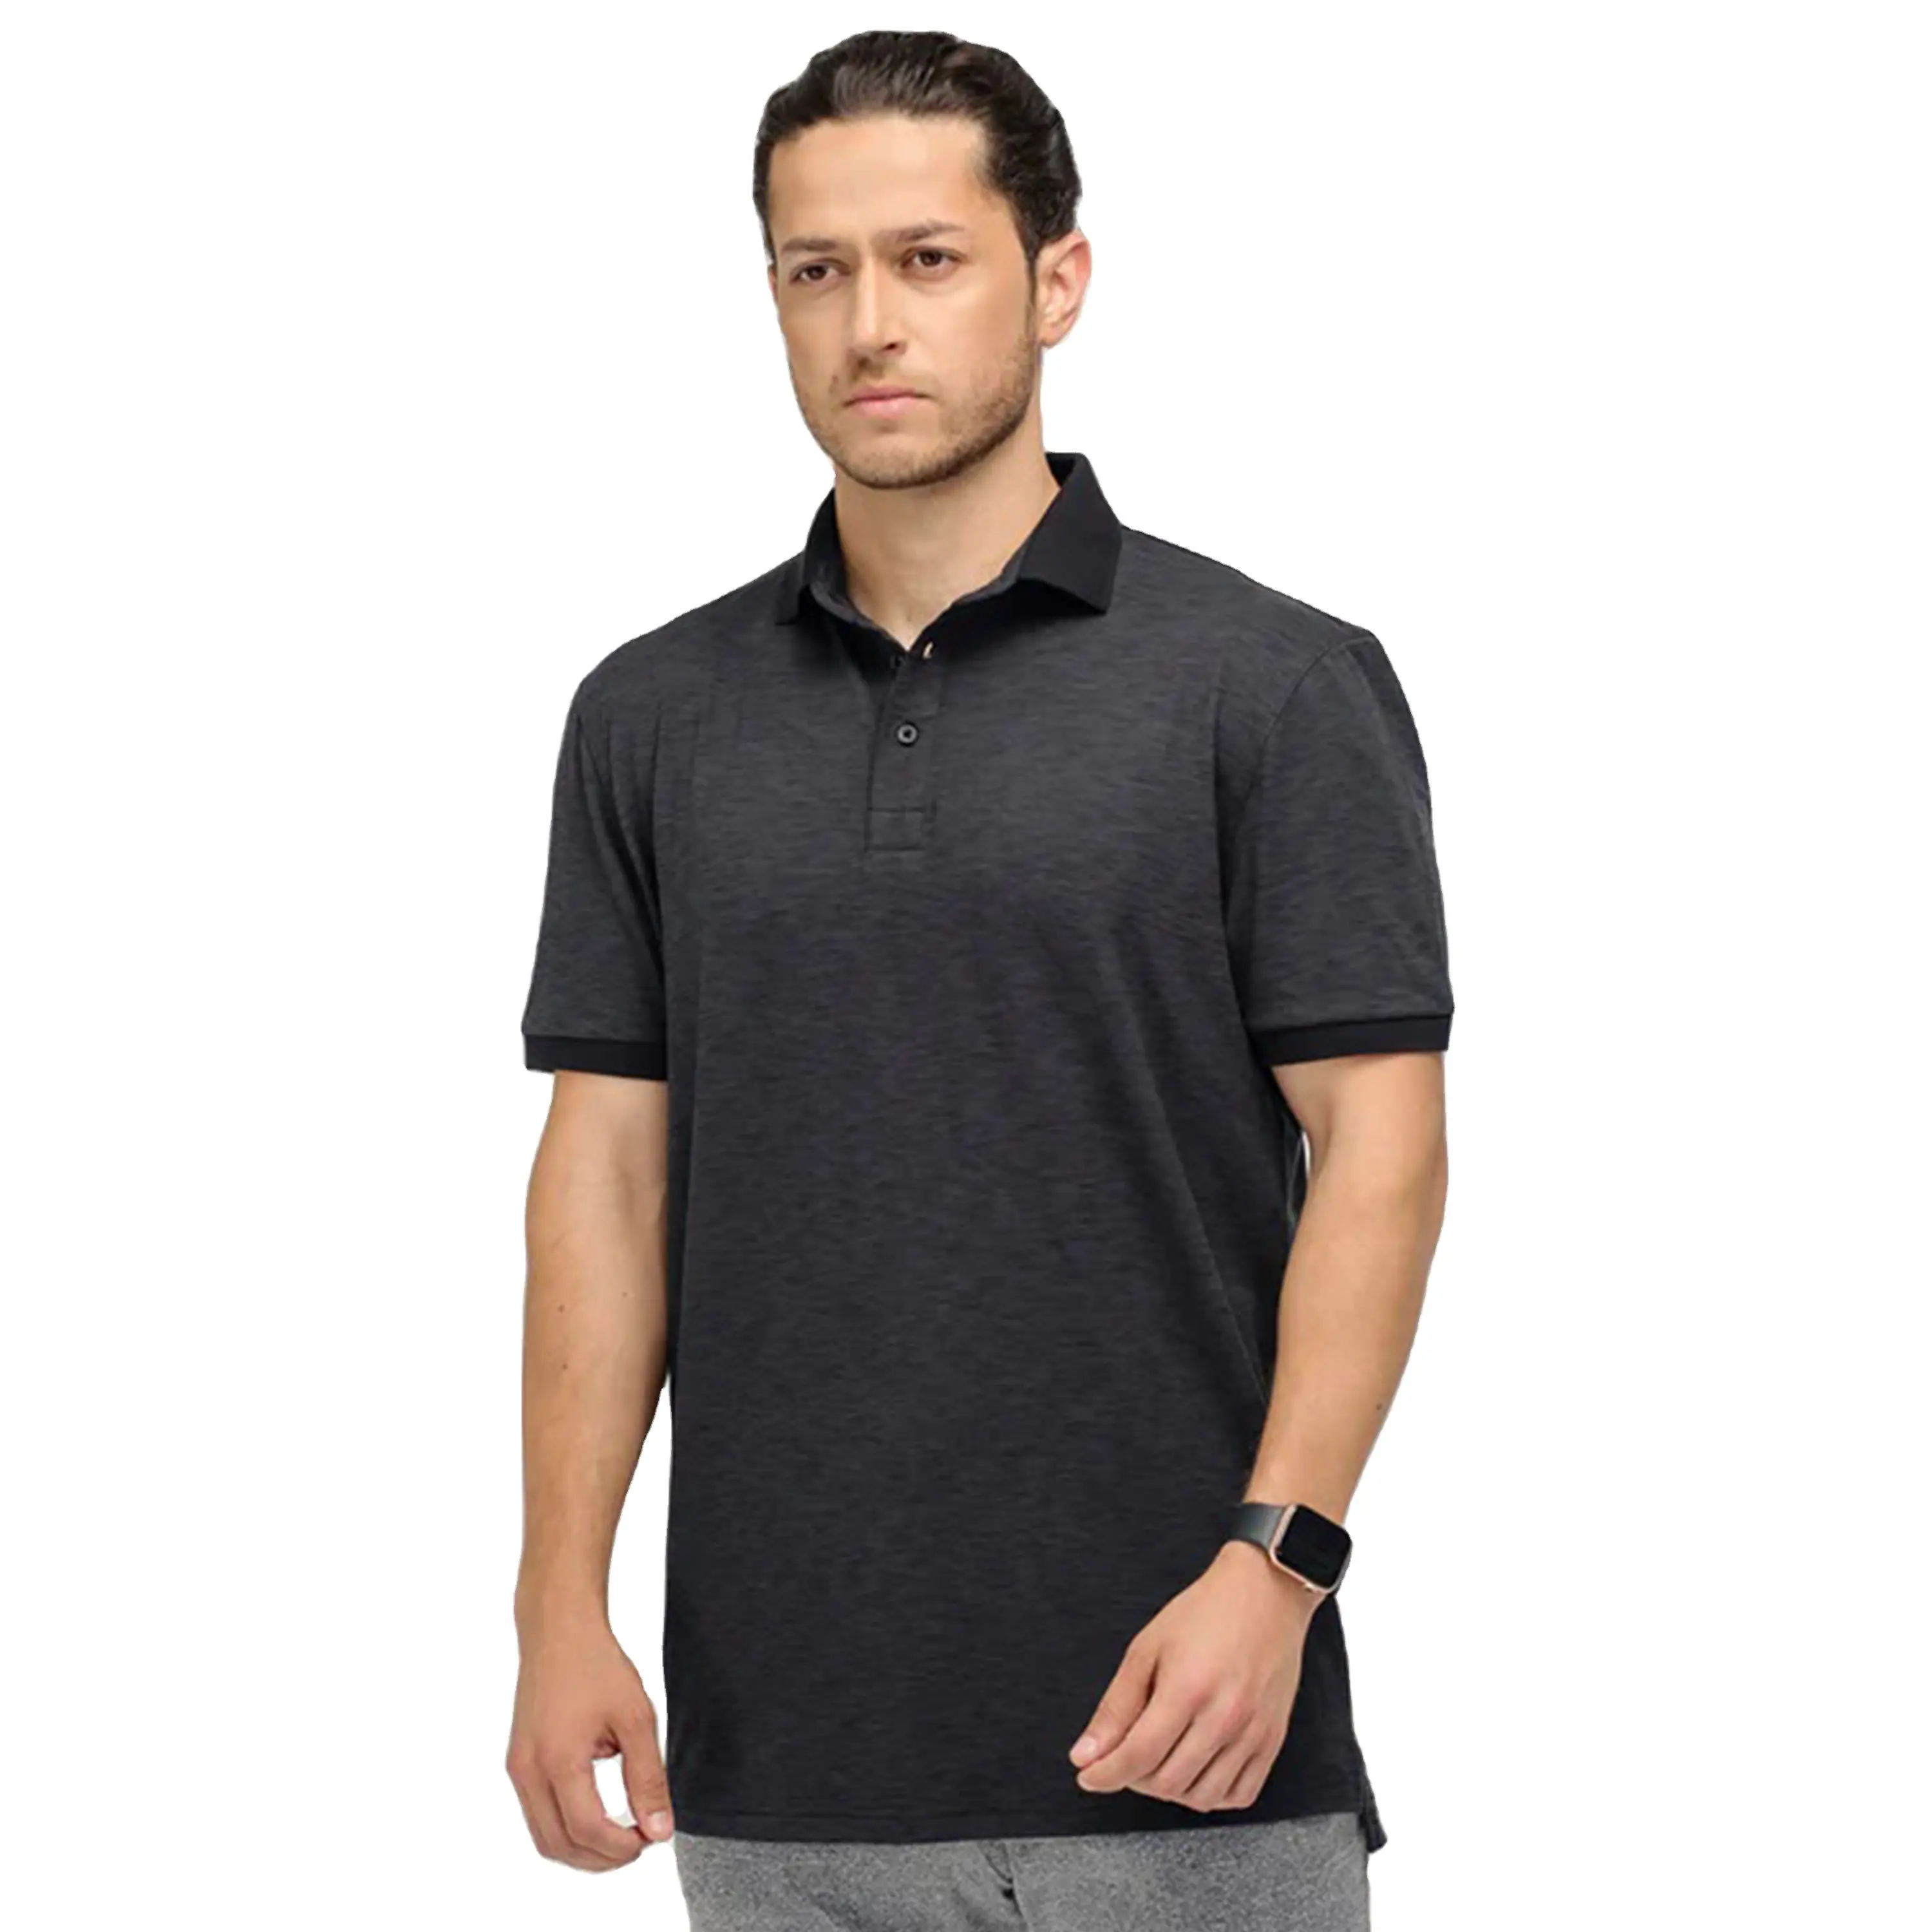 कम कीमत वाली गुणवत्ता वाले पुरुष कॉटन पोलो शर्ट कस्टम लोगो वर्क कपड़े गोल्फ पोलो शर्ट